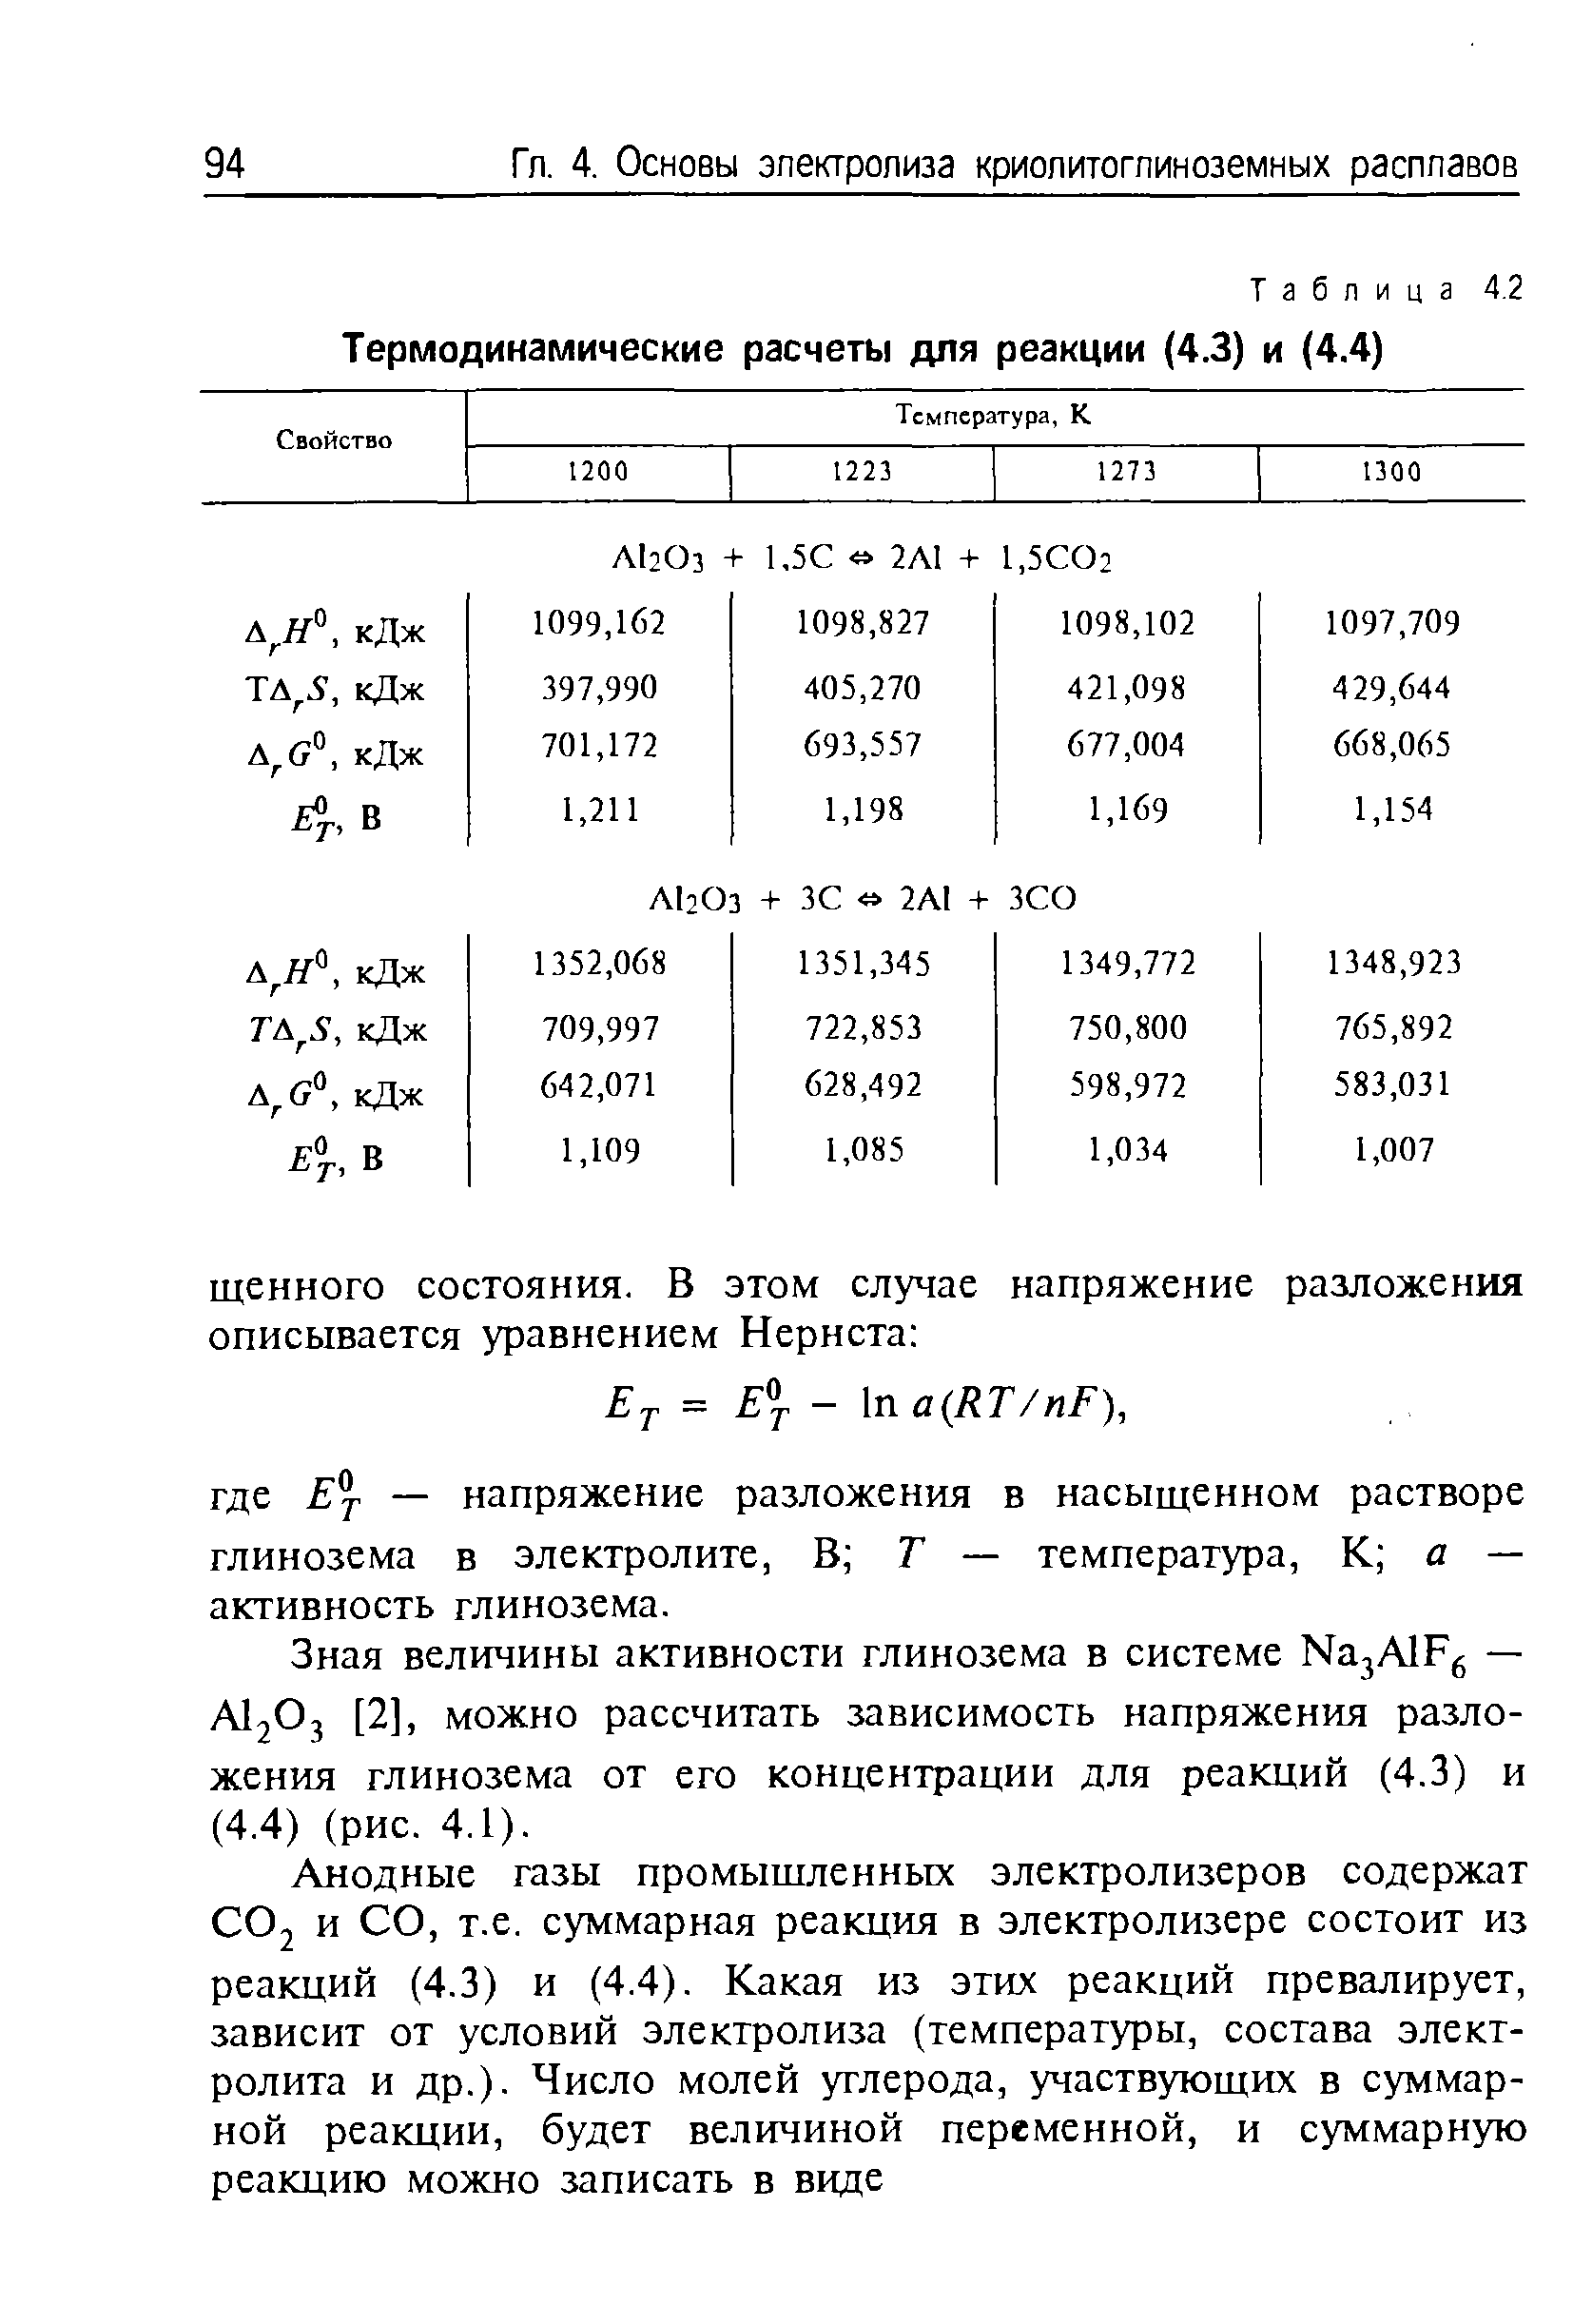 Таблица 4.2 Термодинамические расчеты для реакции (4.3) и (4.4)
